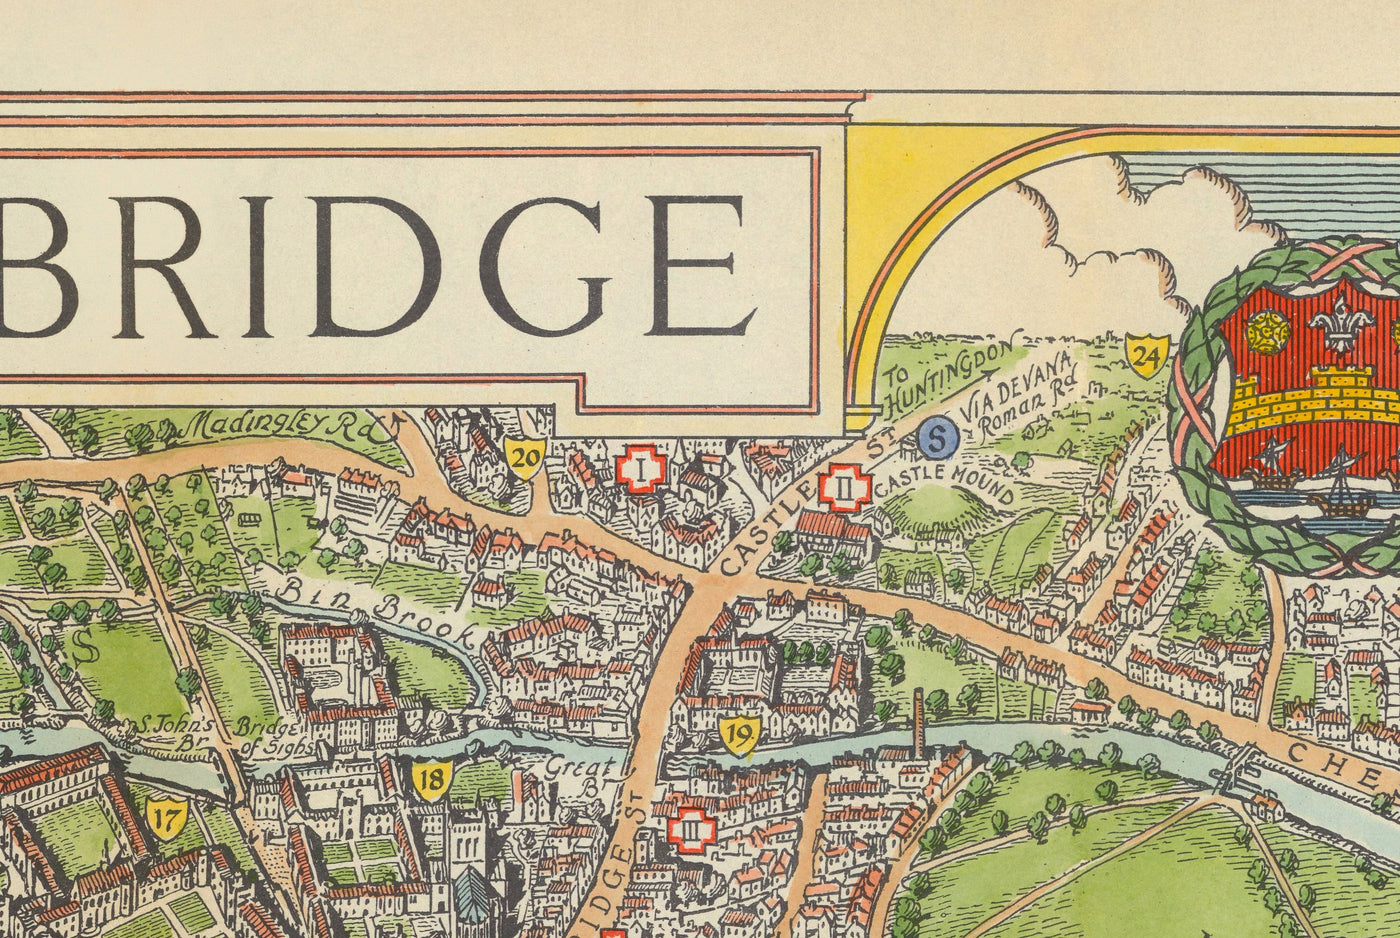 Alte Karte von Cambridge, 1929 - Trinity, St. John's, King's, Peterhouse, Jesus - Universität und Hochschulen